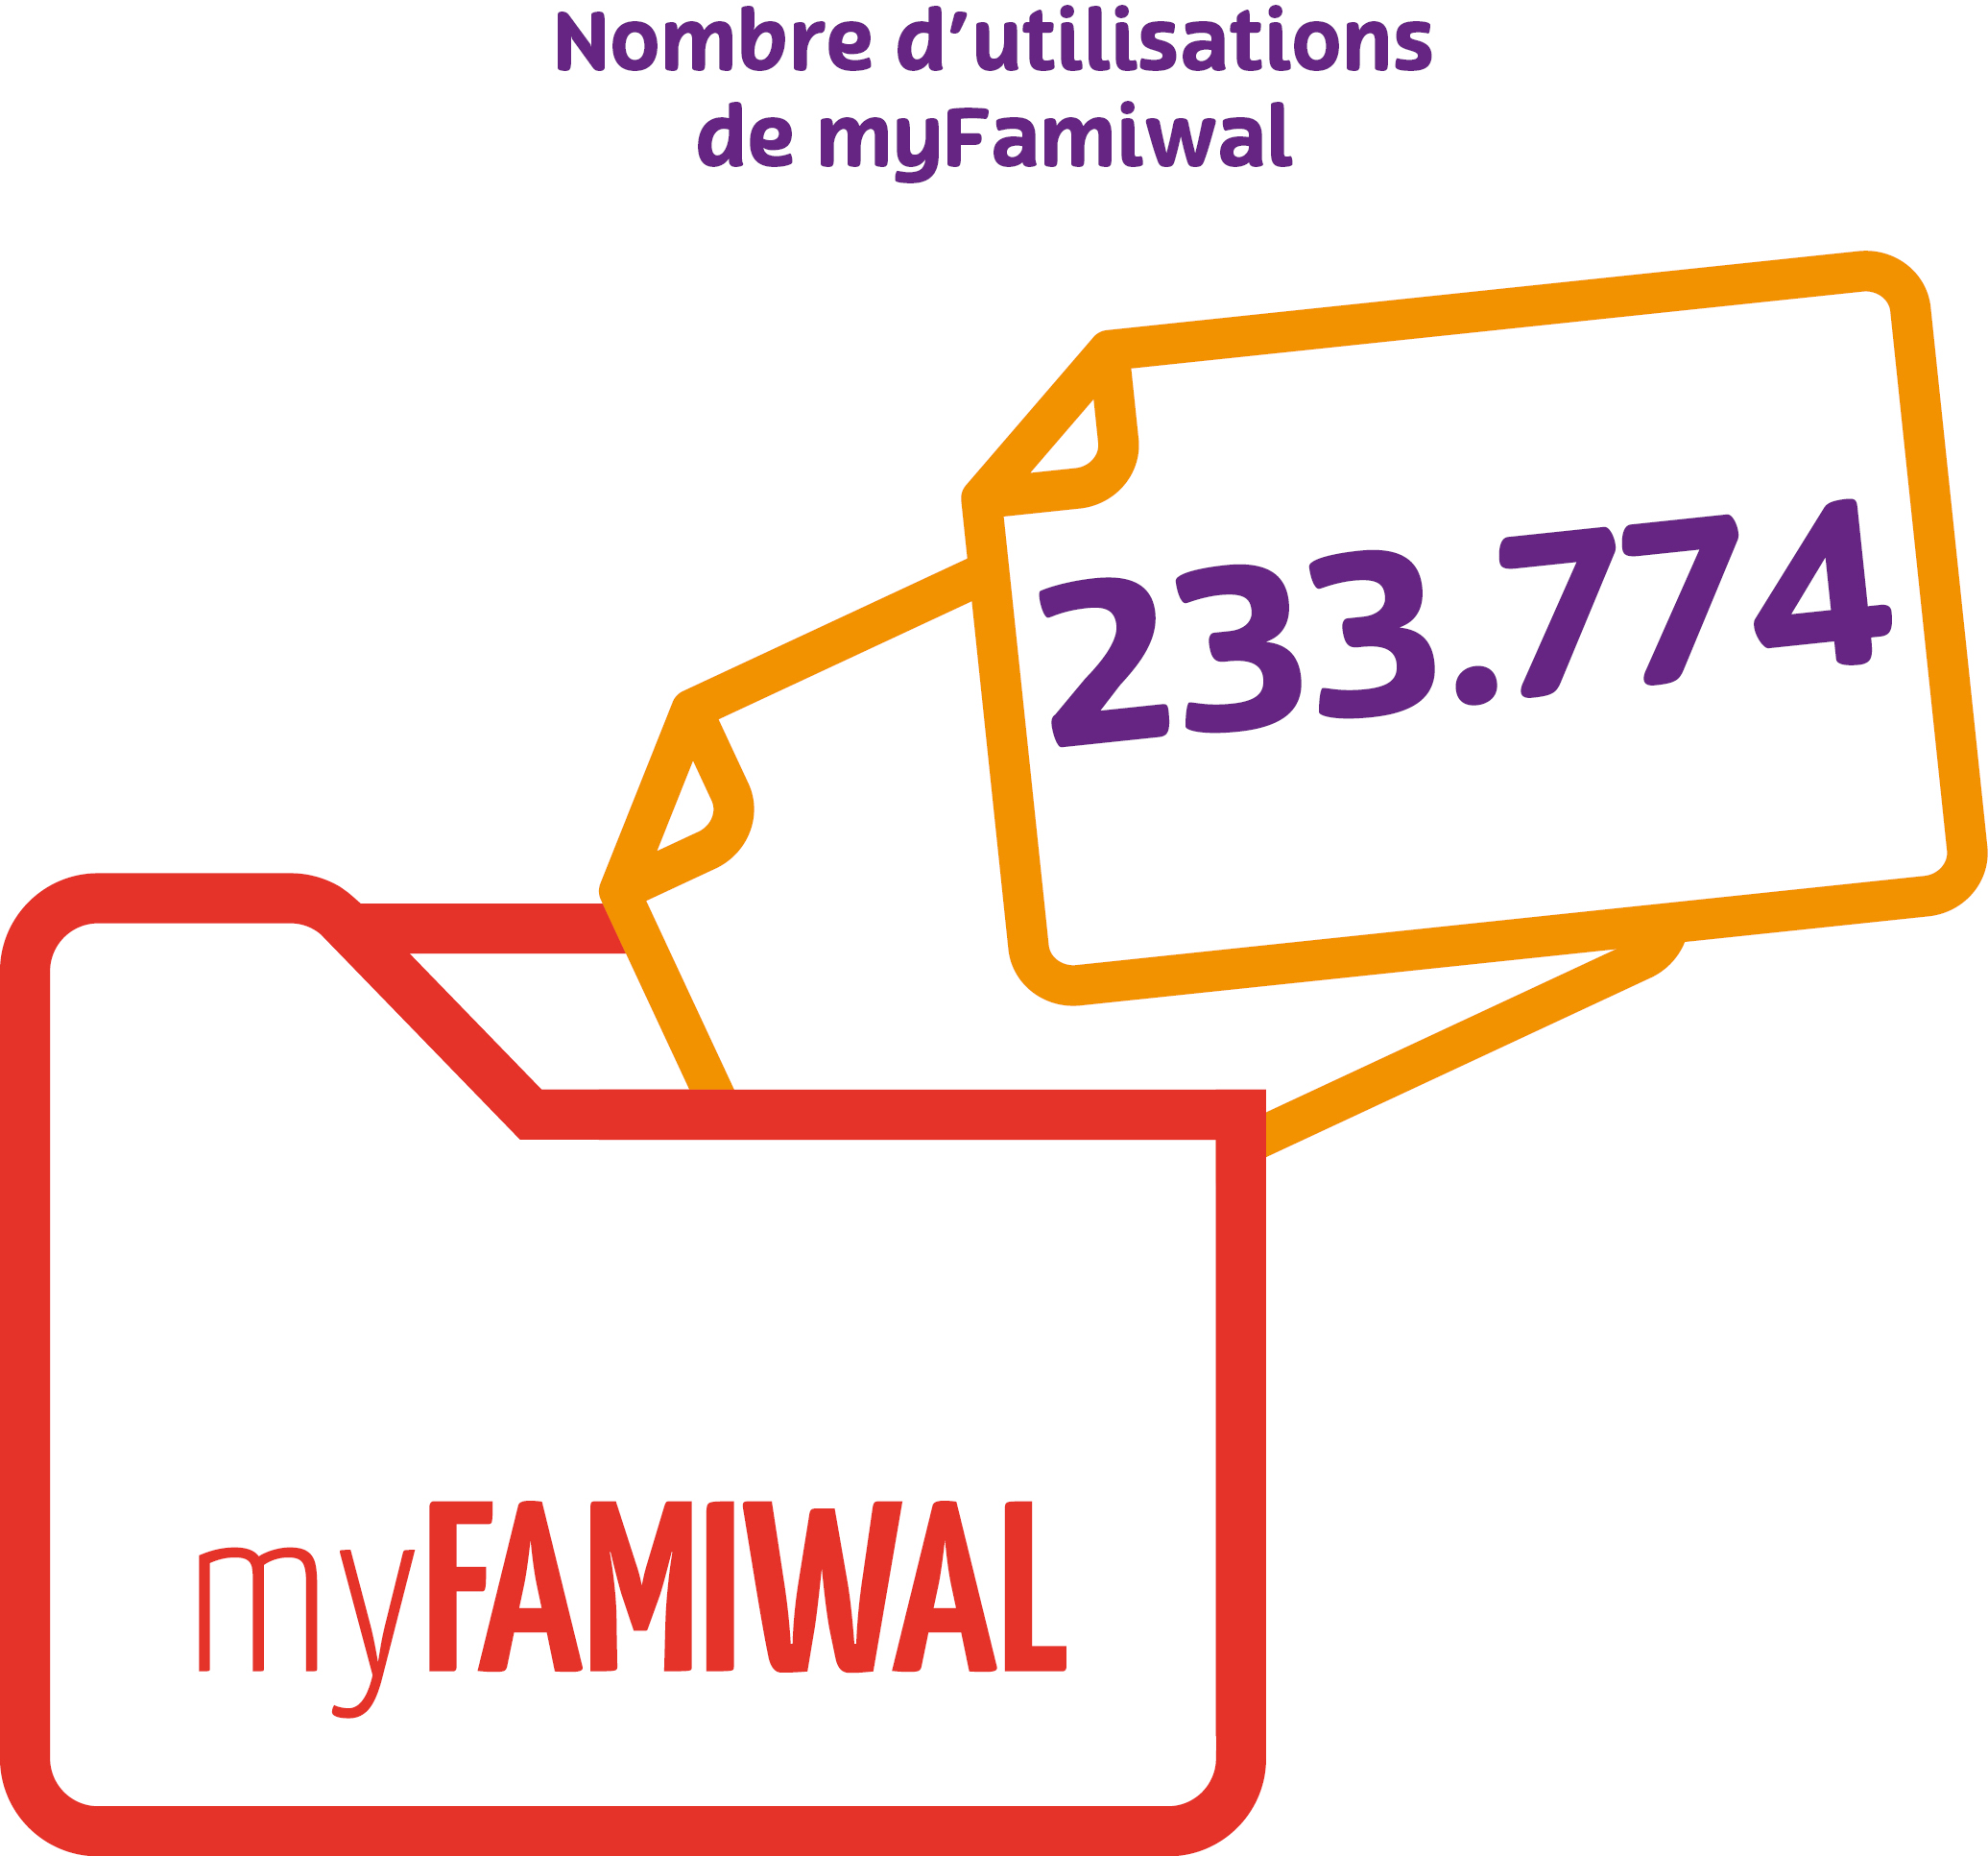 Nombre d'utilisations de myfamiwal